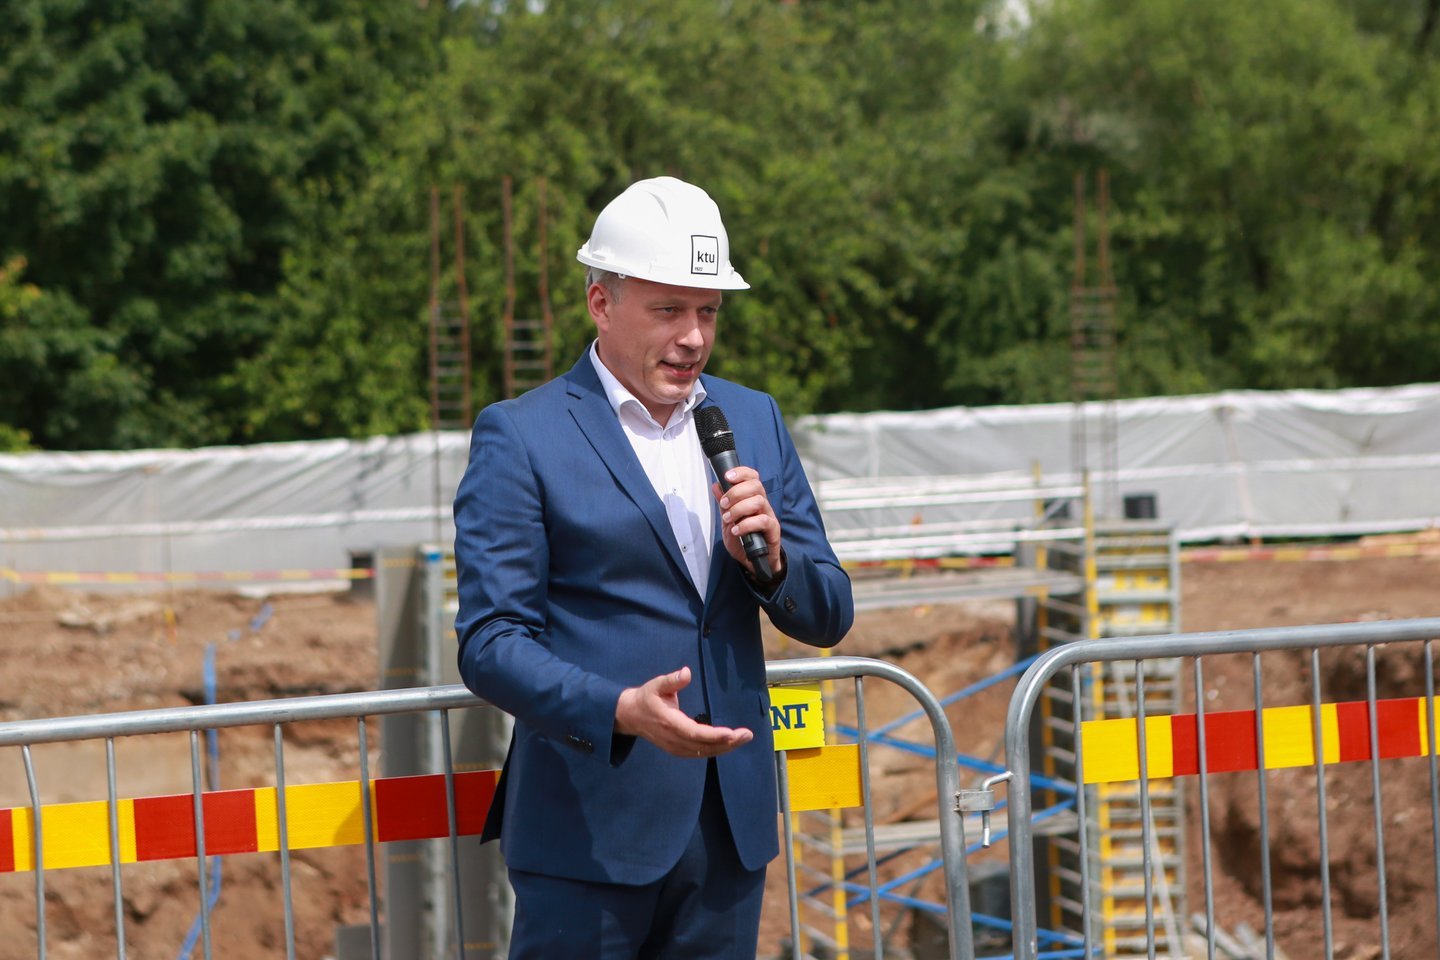  Statybos darbus ketinama užbaigti iki 2022-ųjų pabaigos.<br> G.Bitvinsko nuotr.